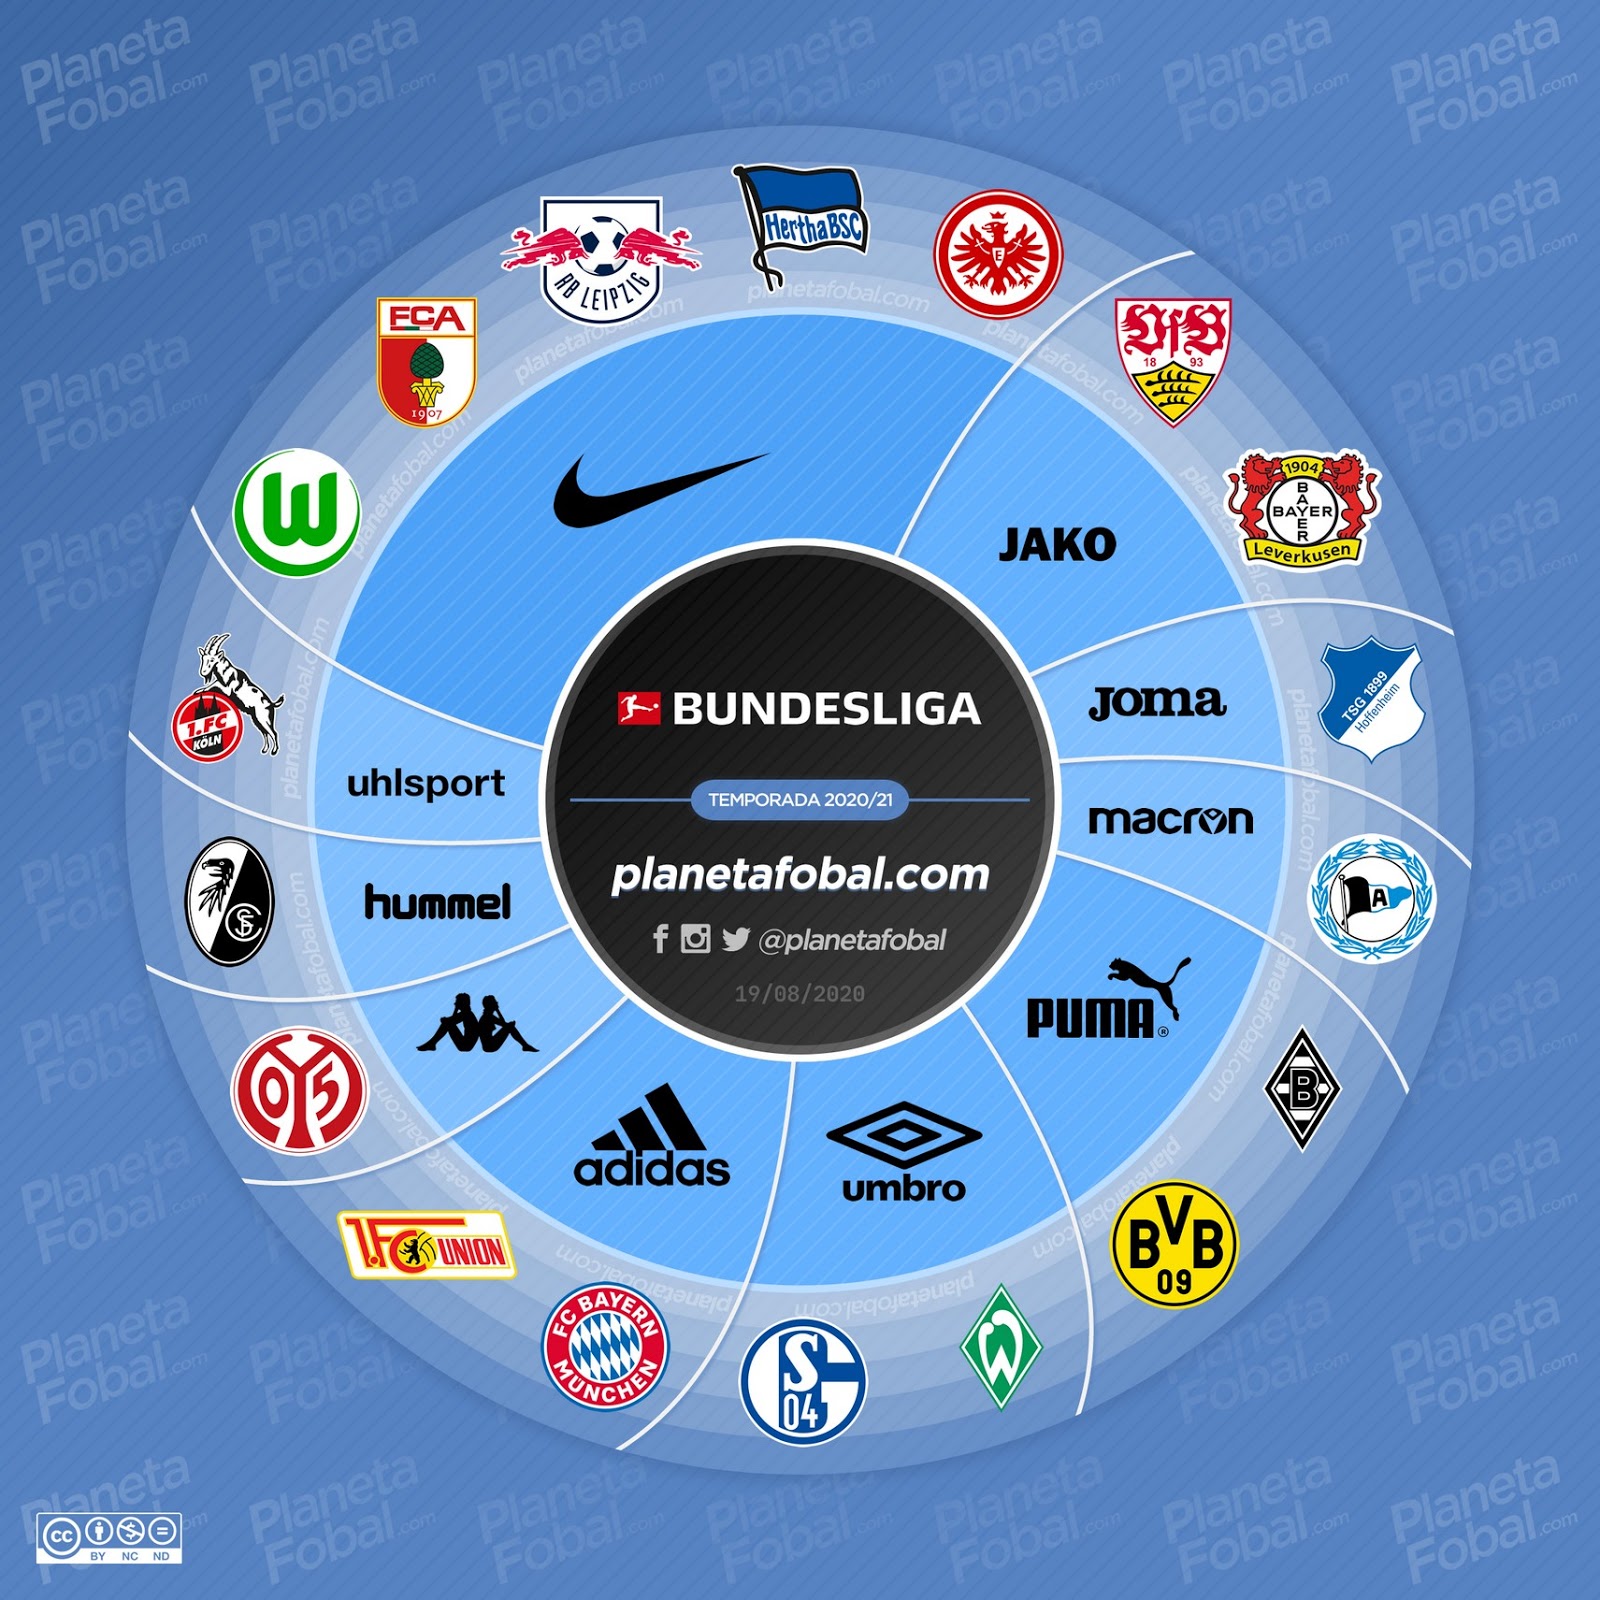 22 Bundesliga